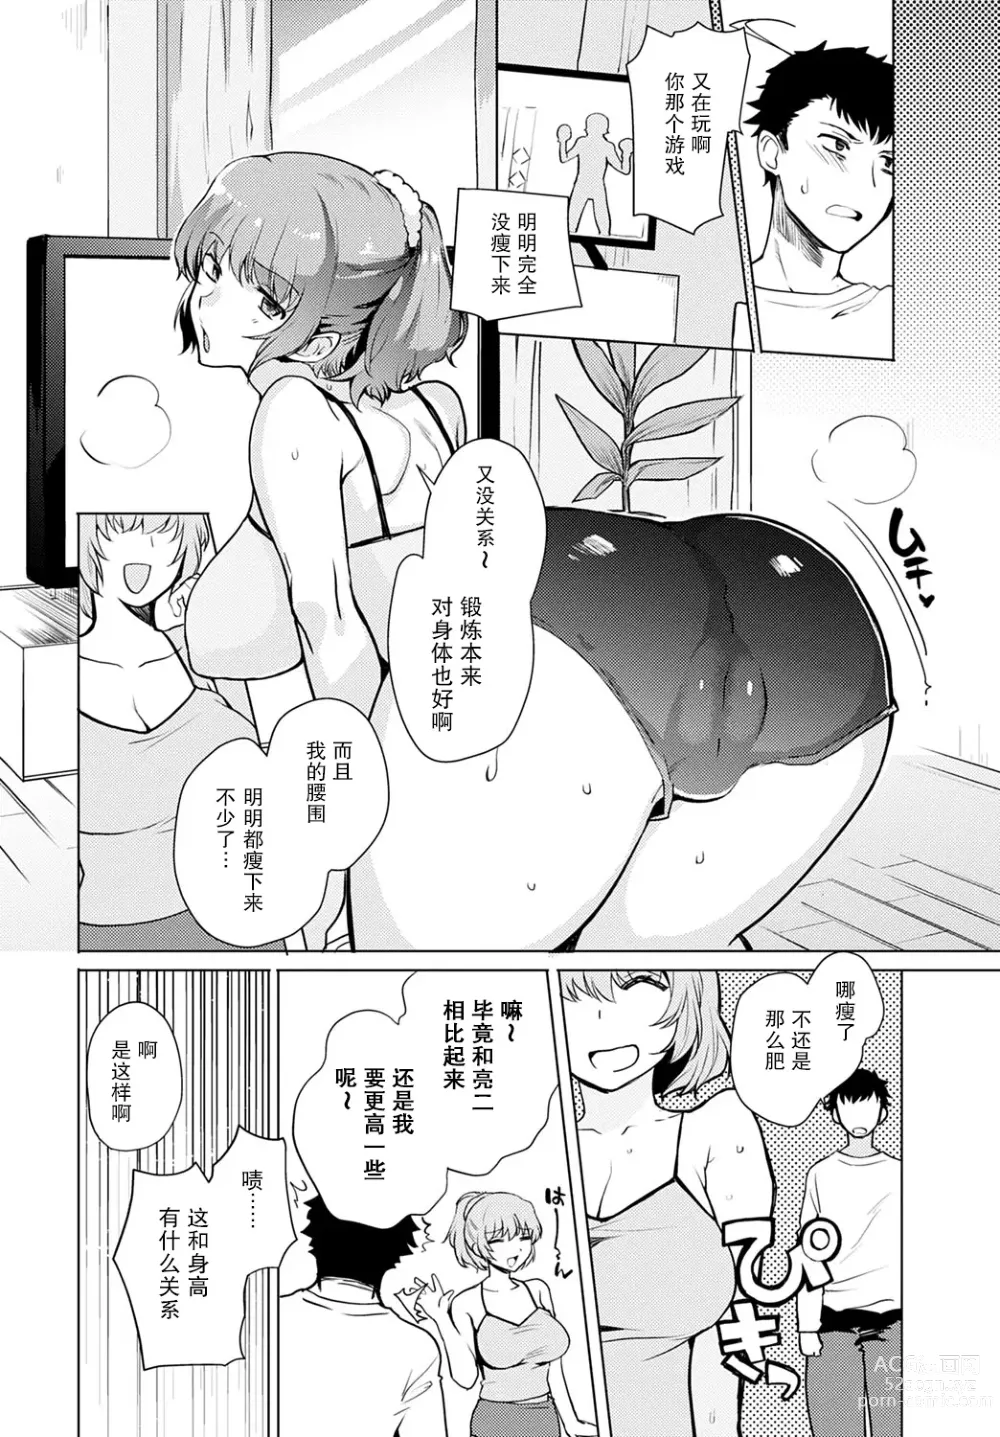 Page 2 of manga Kyoudai Switch Siblings Switch